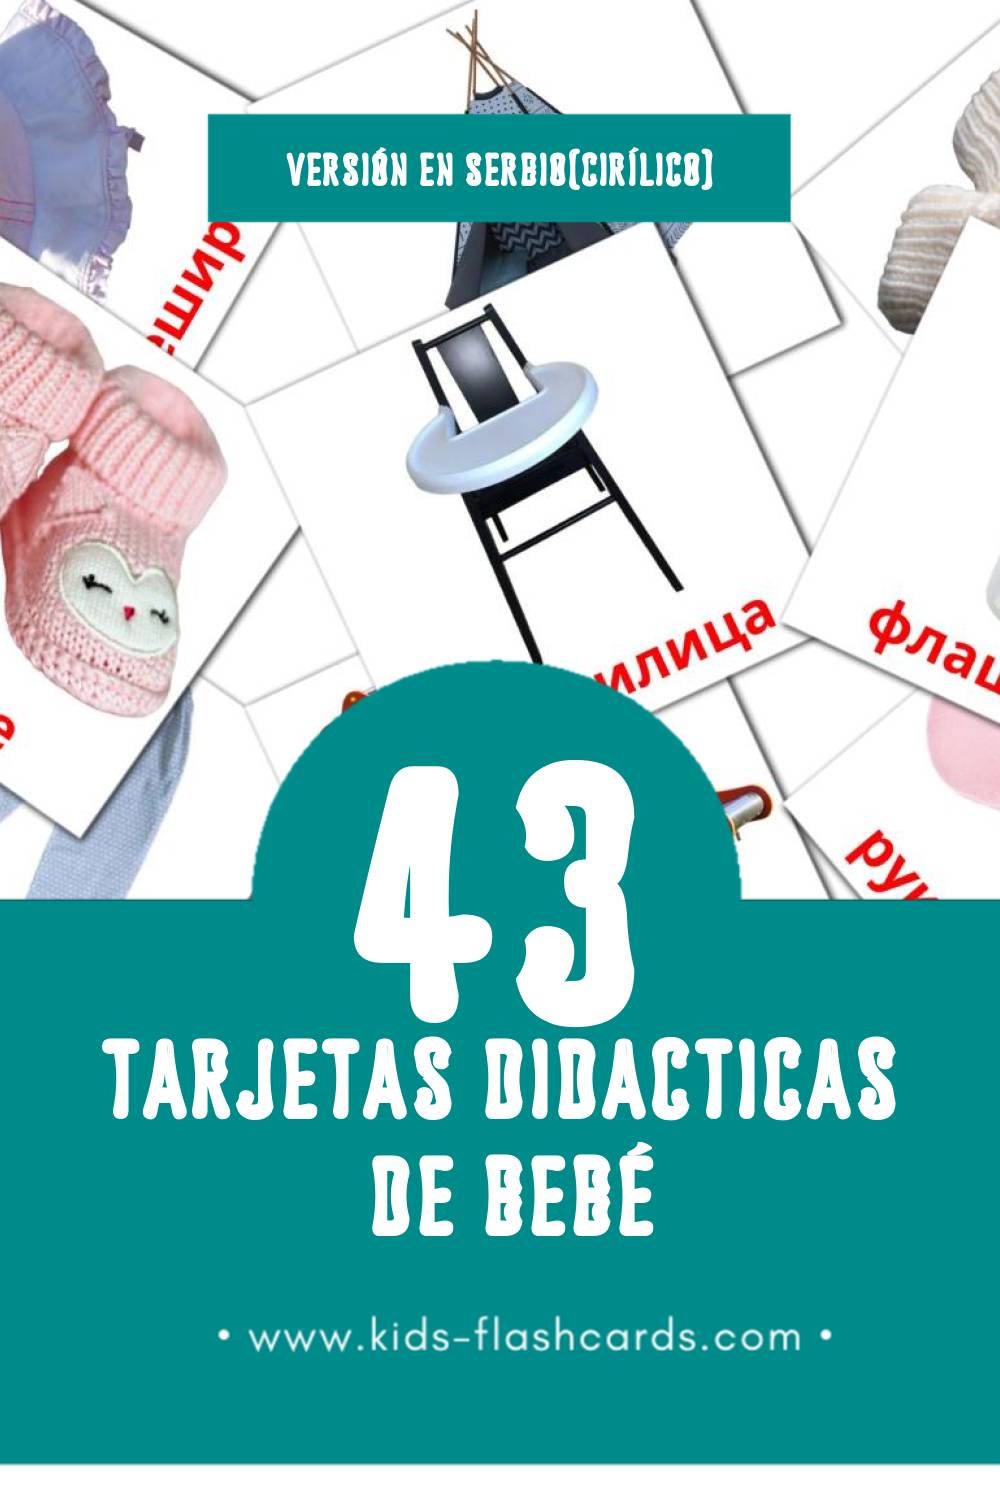 Tarjetas visuales de Беба para niños pequeños (43 tarjetas en Serbio(cirílico))